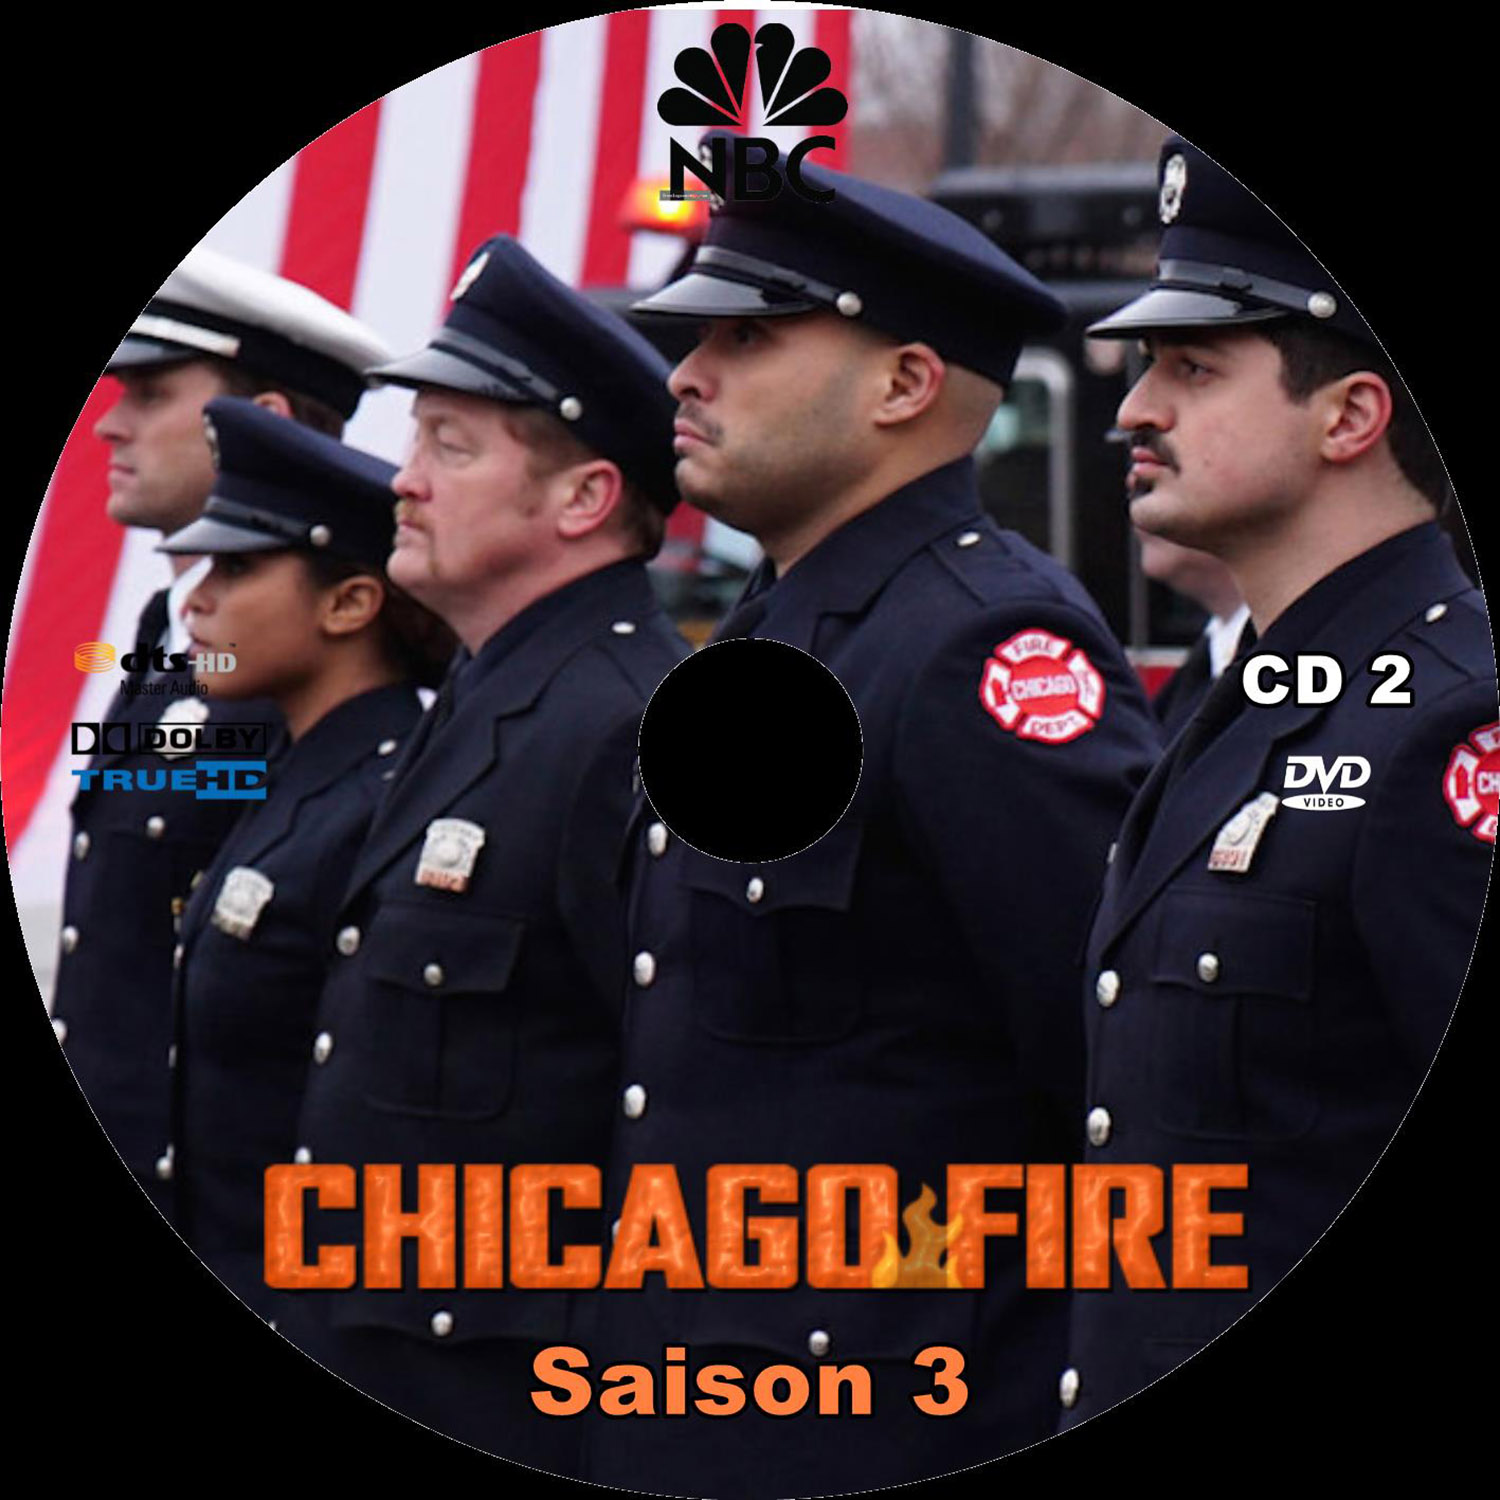 Chicago fire saison 3 DISC 2 custom